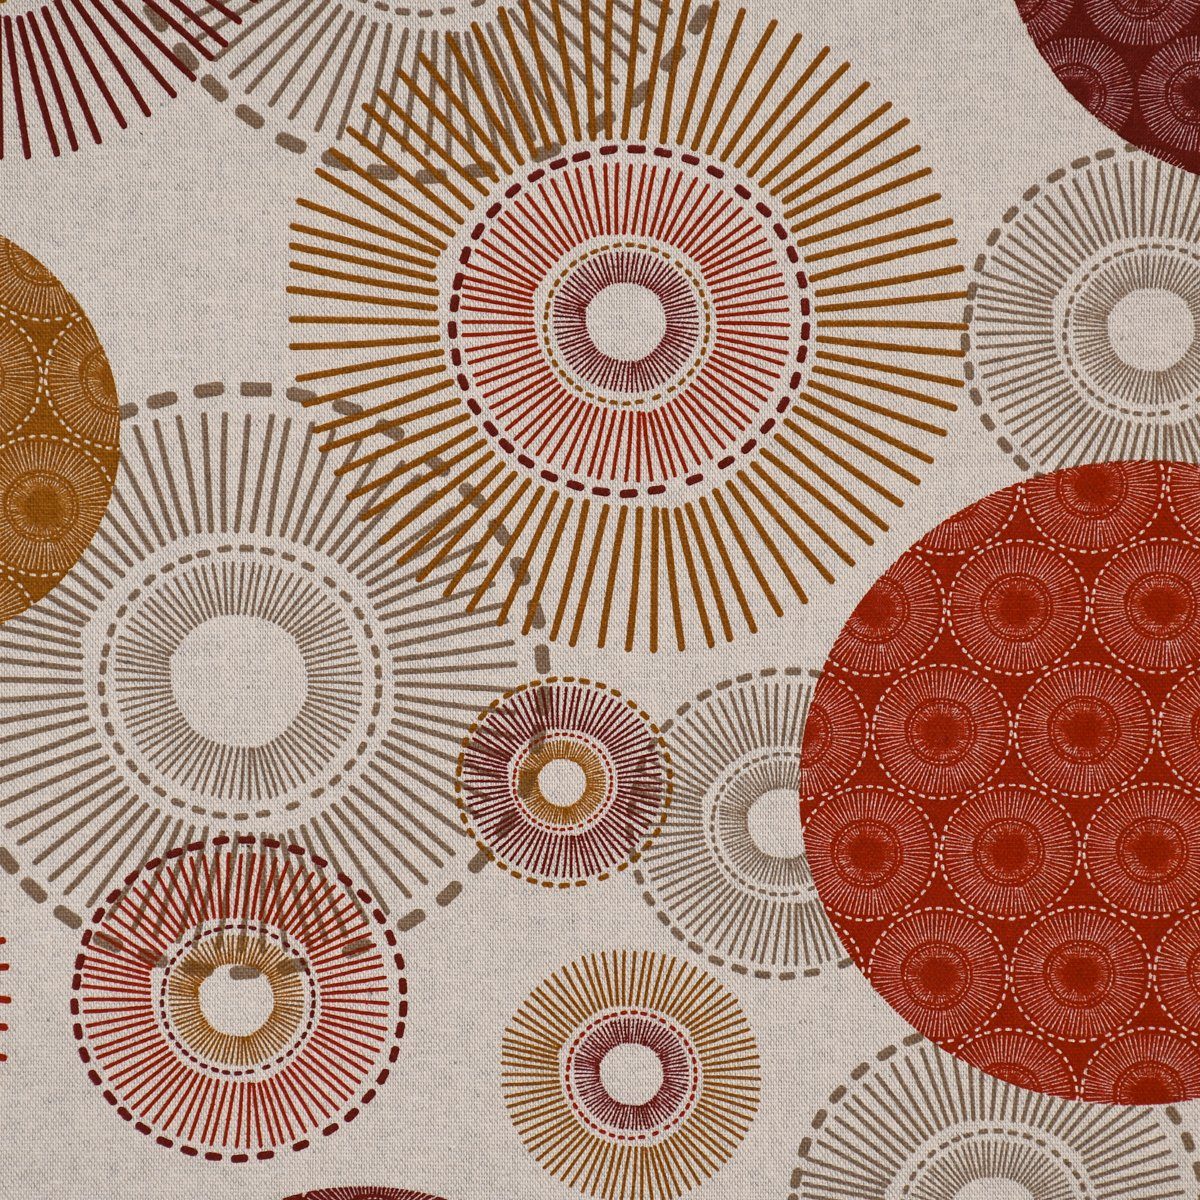 SCHÖNER LEBEN. Tischläufer SCHÖNER Tischläufer Halb-Alvares oc, Kreise natur Ornamente handmade LEBEN. rot